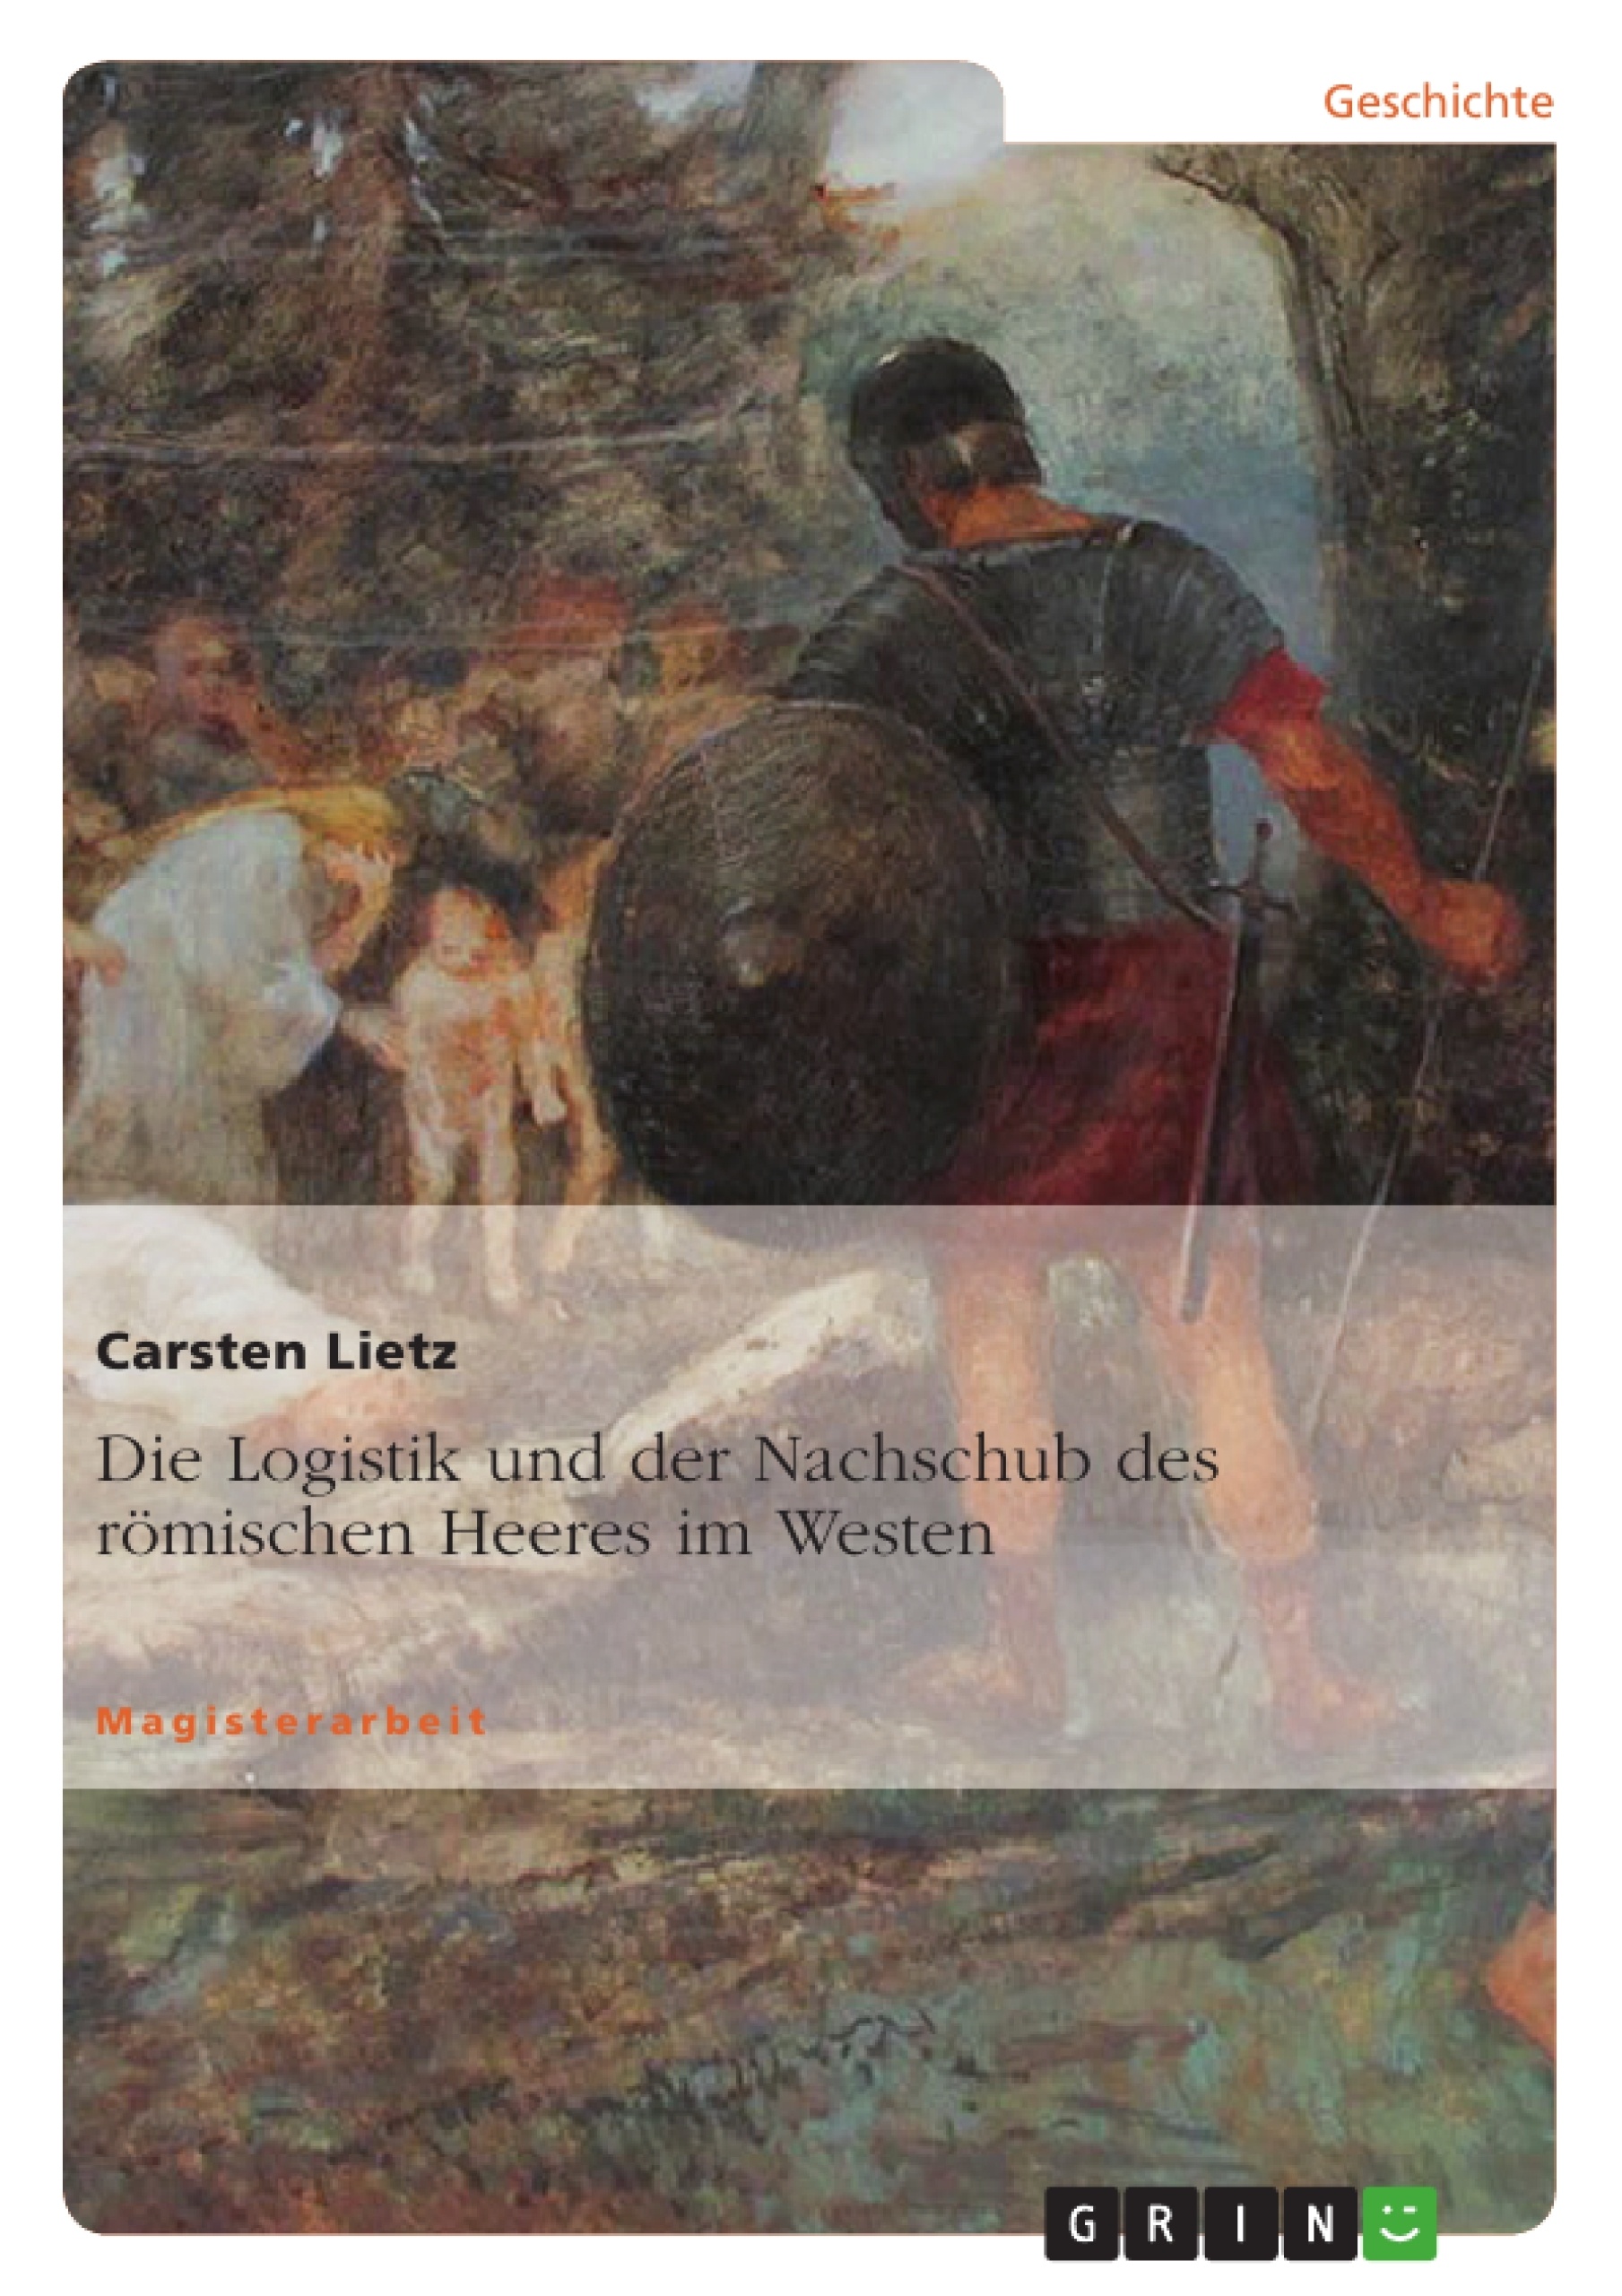 Titre: Die Logistik und der Nachschub des römischen Heeres im Westen